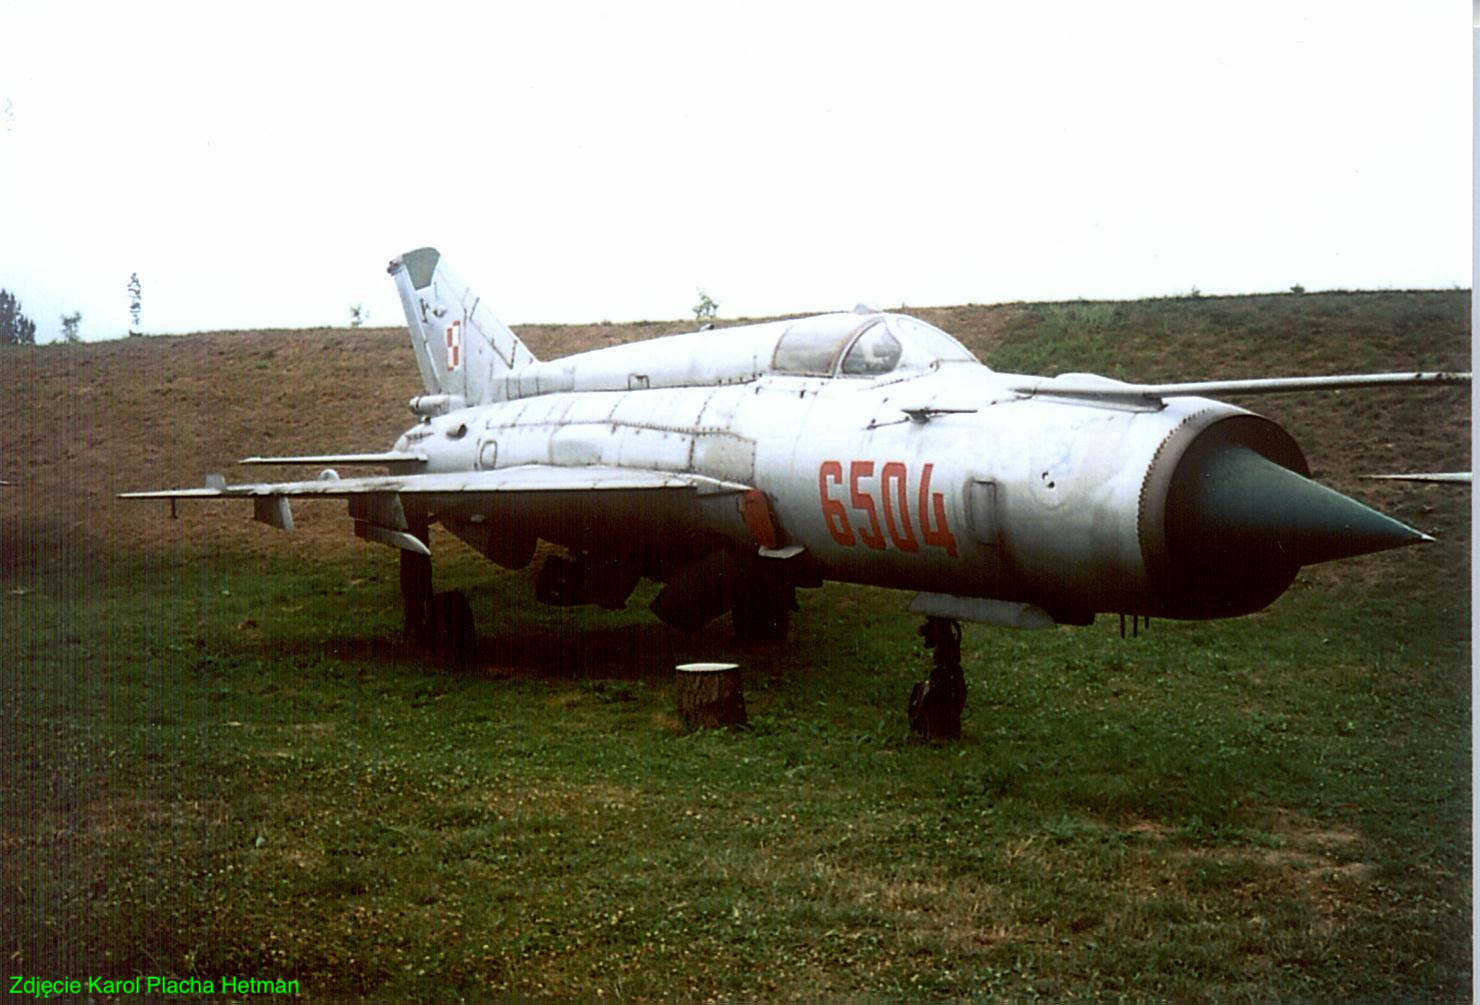 MiG-21 MF nb 6504. 2002 year. Photo by Karol Placha Hetman